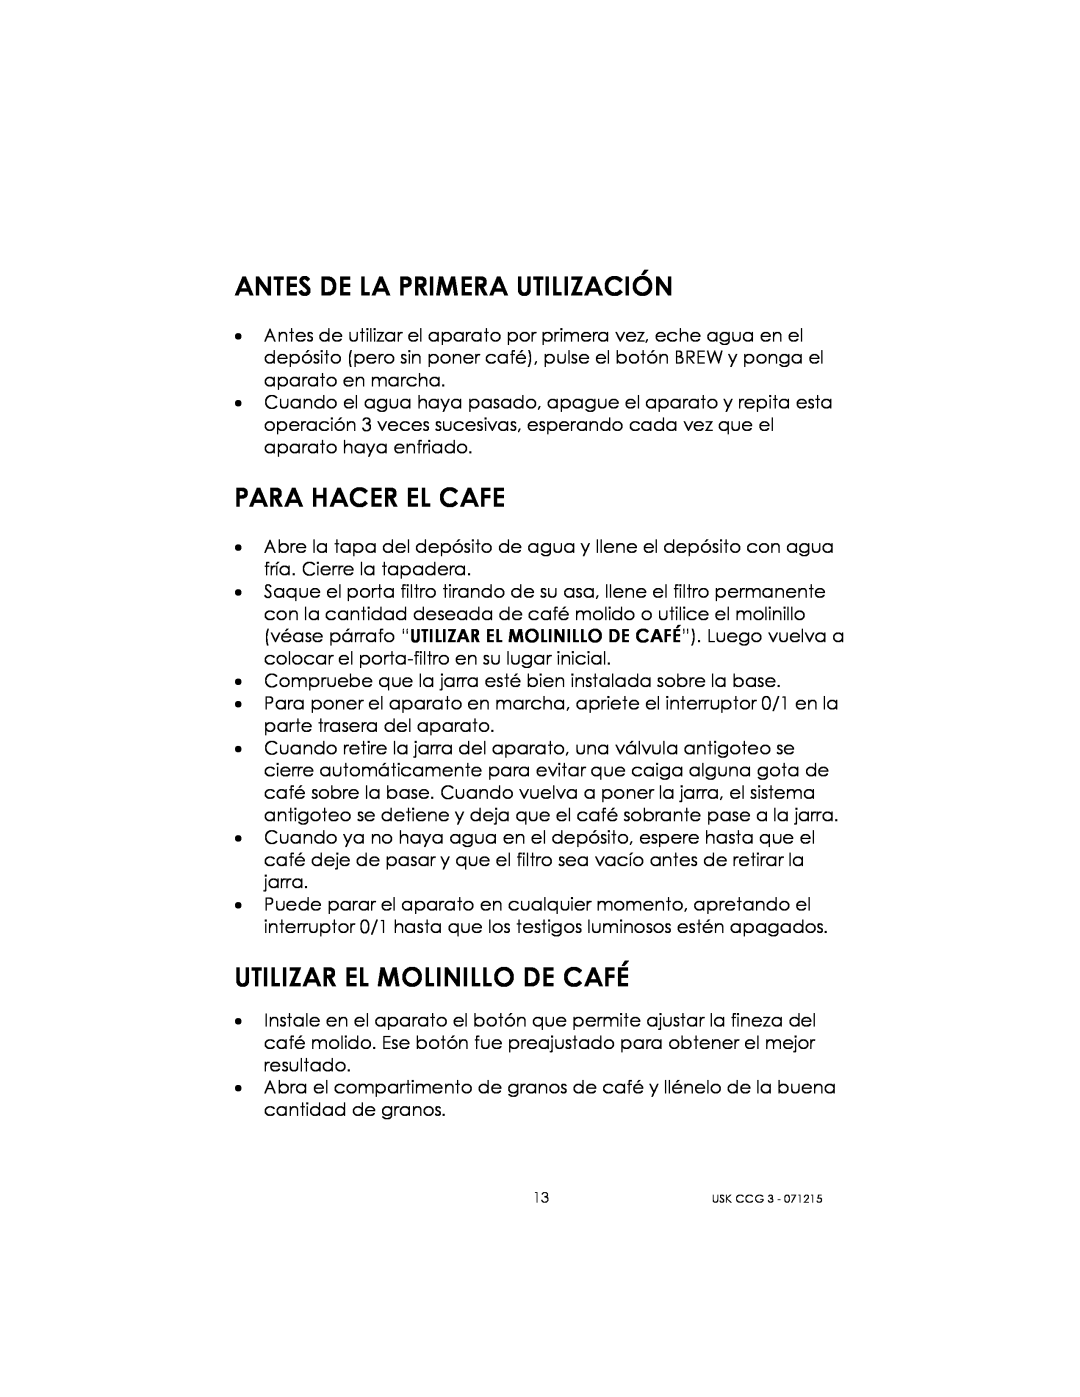 Kalorik USK CCG 3 manual Antes De La Primera Utilización, Para Hacer El Cafe, Utilizar El Molinillo De Café 